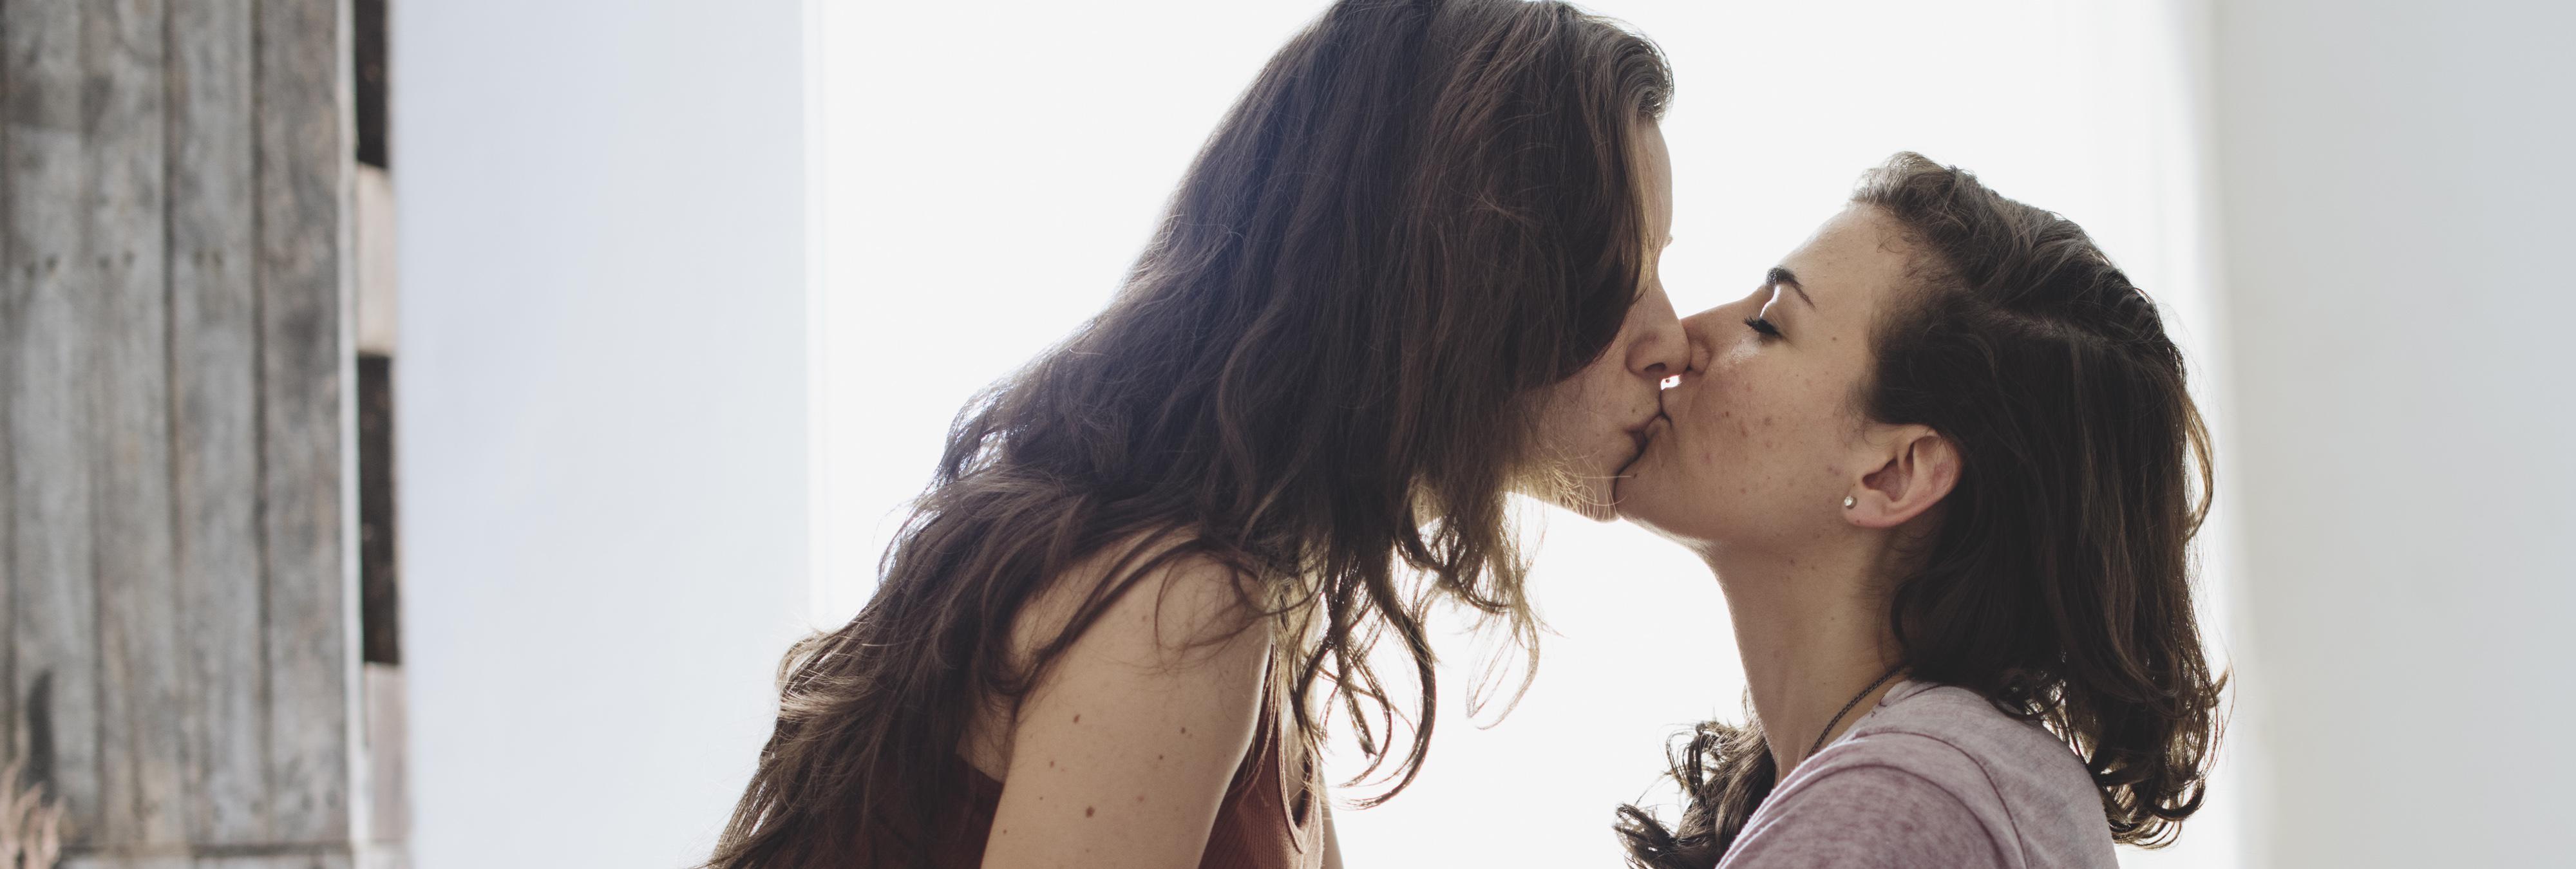 Un estudio basa la existencia del lesbianismo en que a los hombres les "pone"